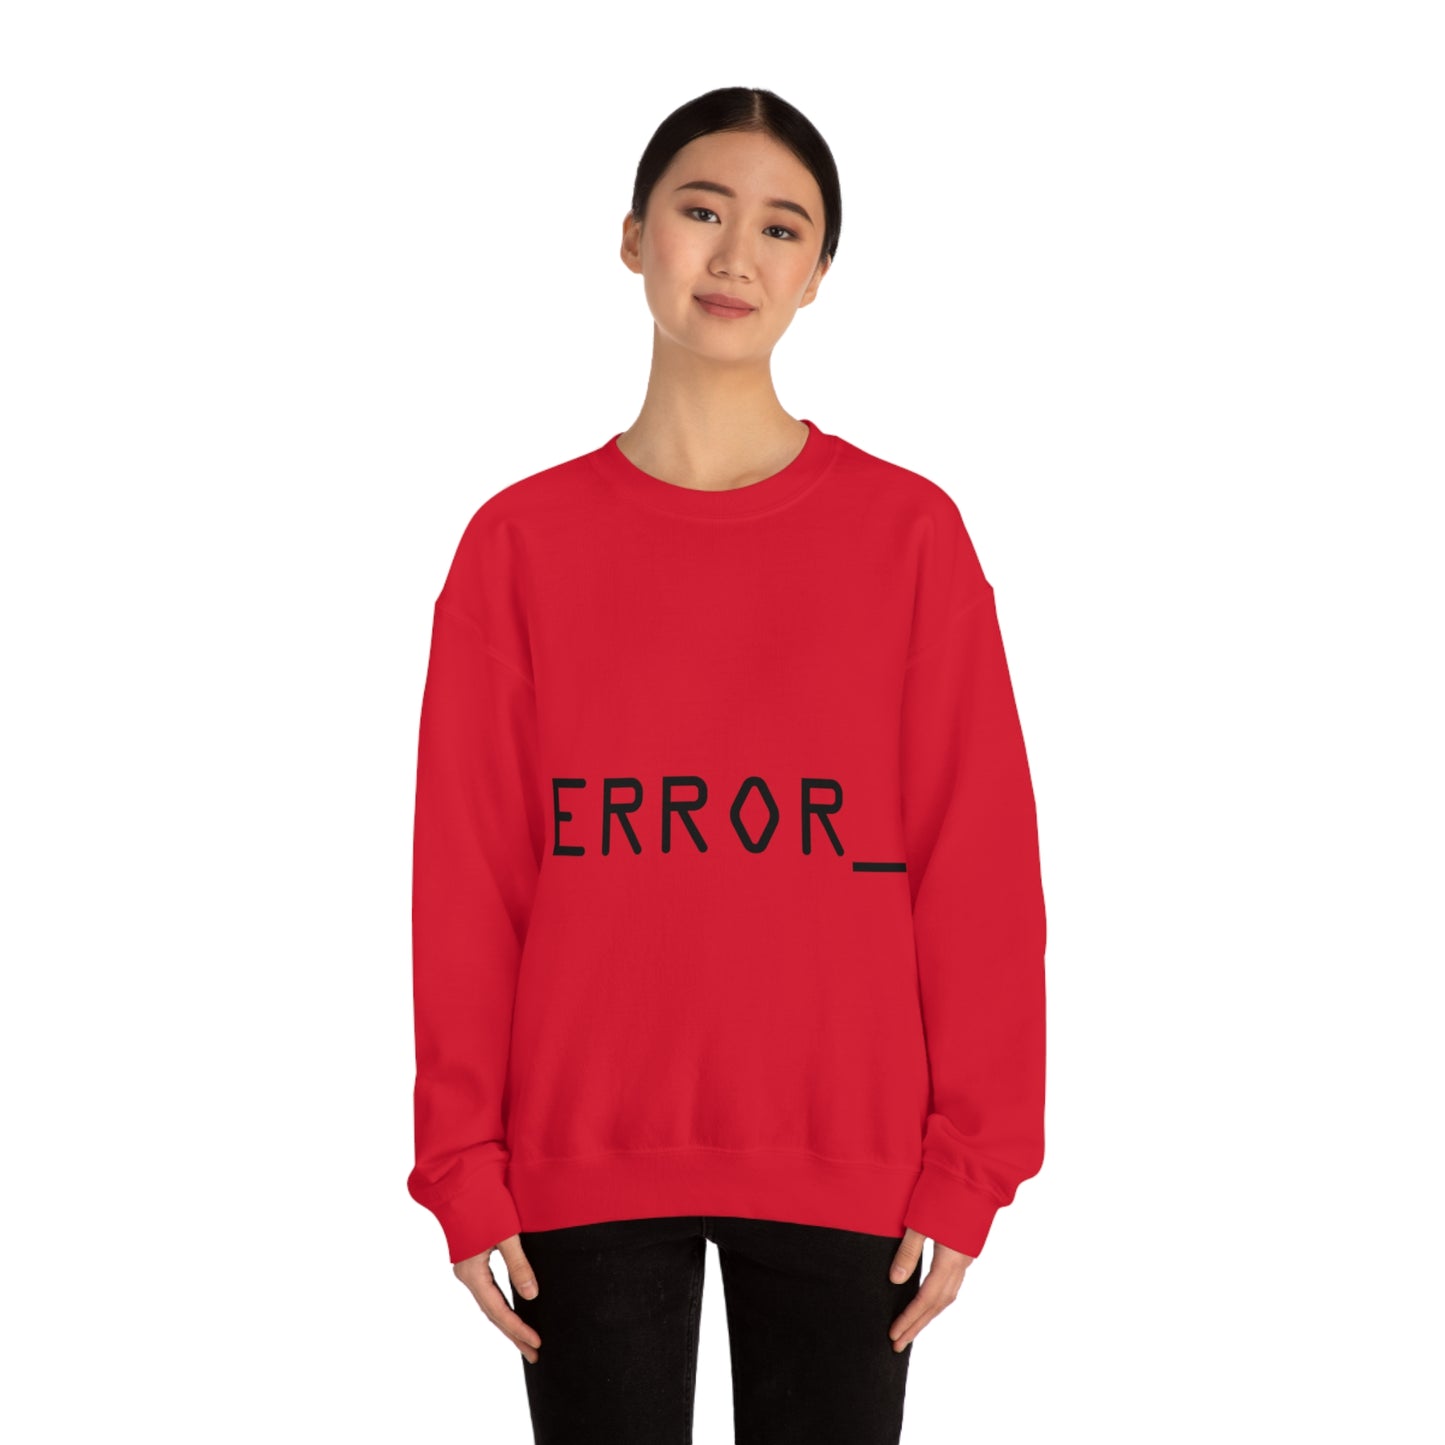 Error Programming IT for Computer Security Hackers Unisex Heavy Blend™ Crewneck Sweatshirt